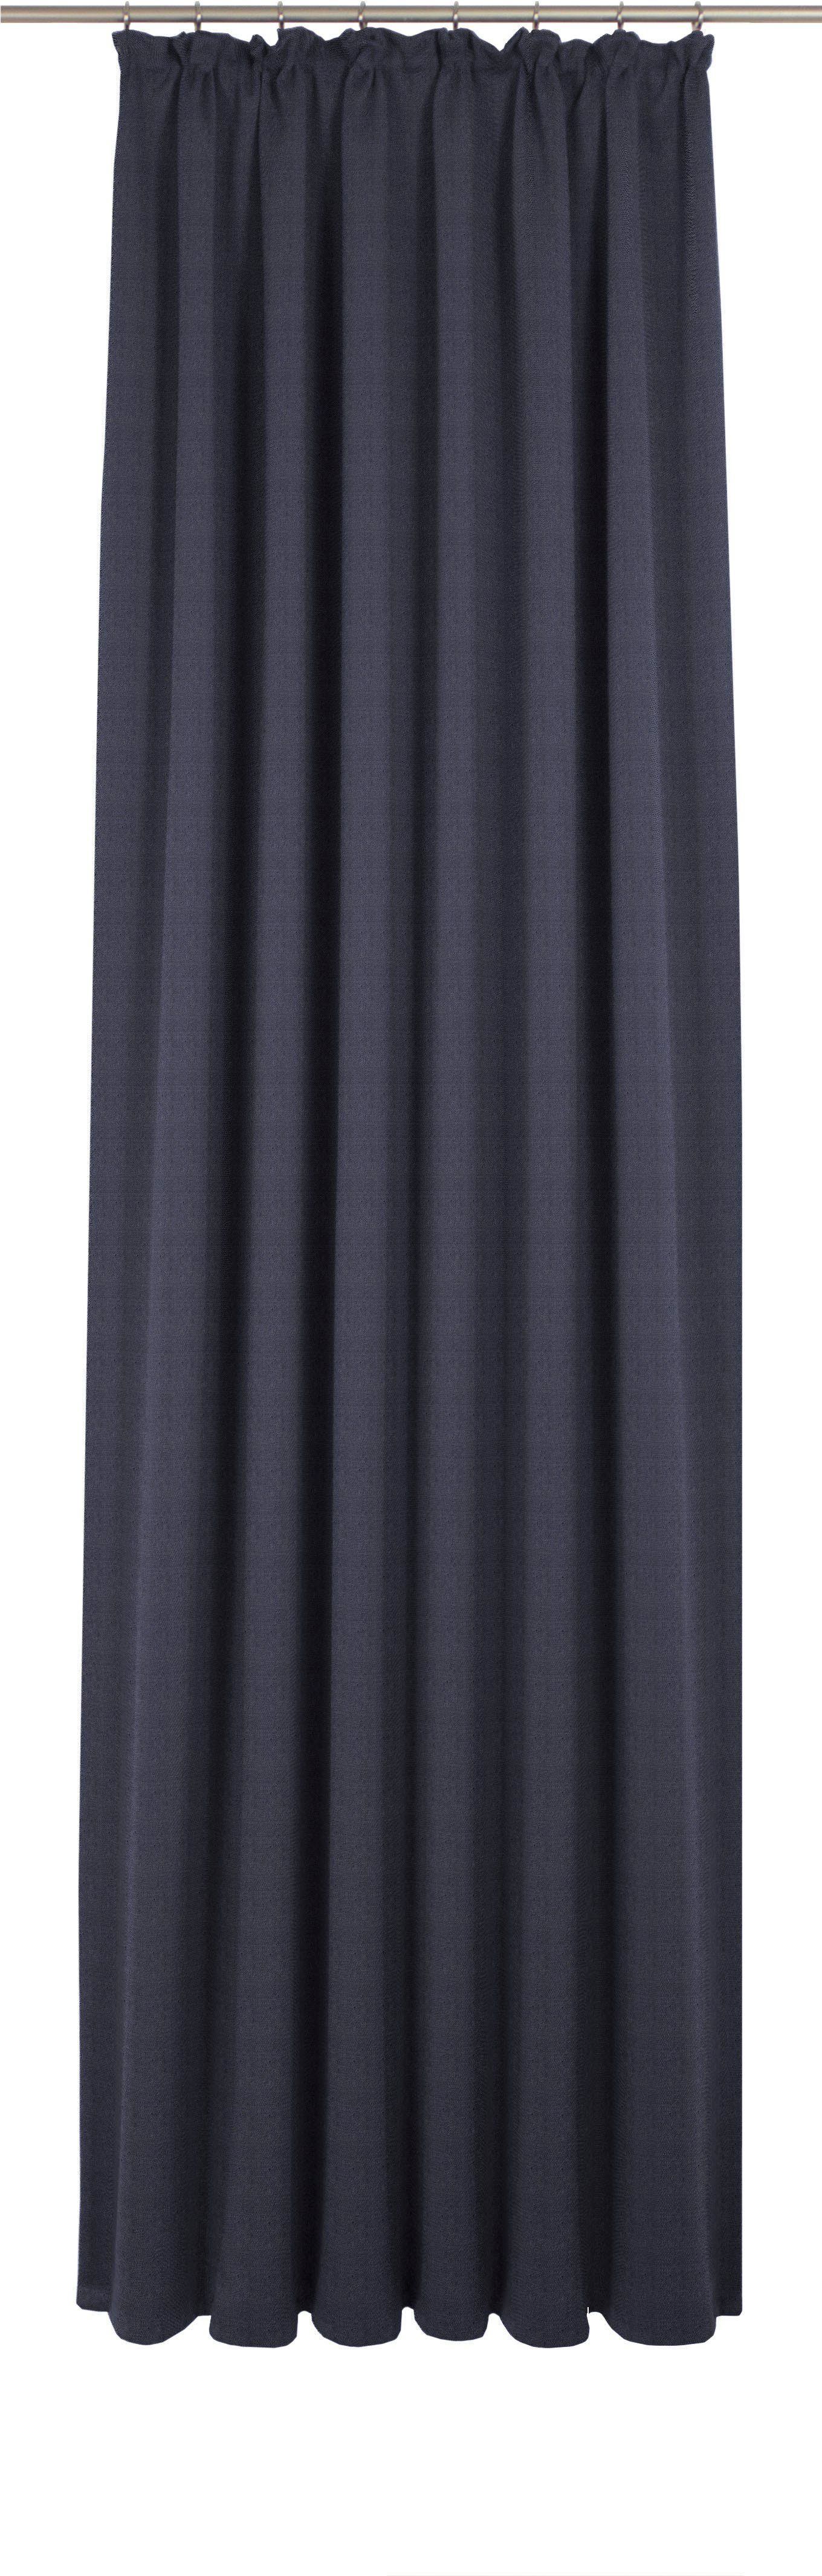 Vorhang Uni Collection, Wirth, Kräuselband (1 St), blickdicht, nach Maß dunkelblau | Fertiggardinen